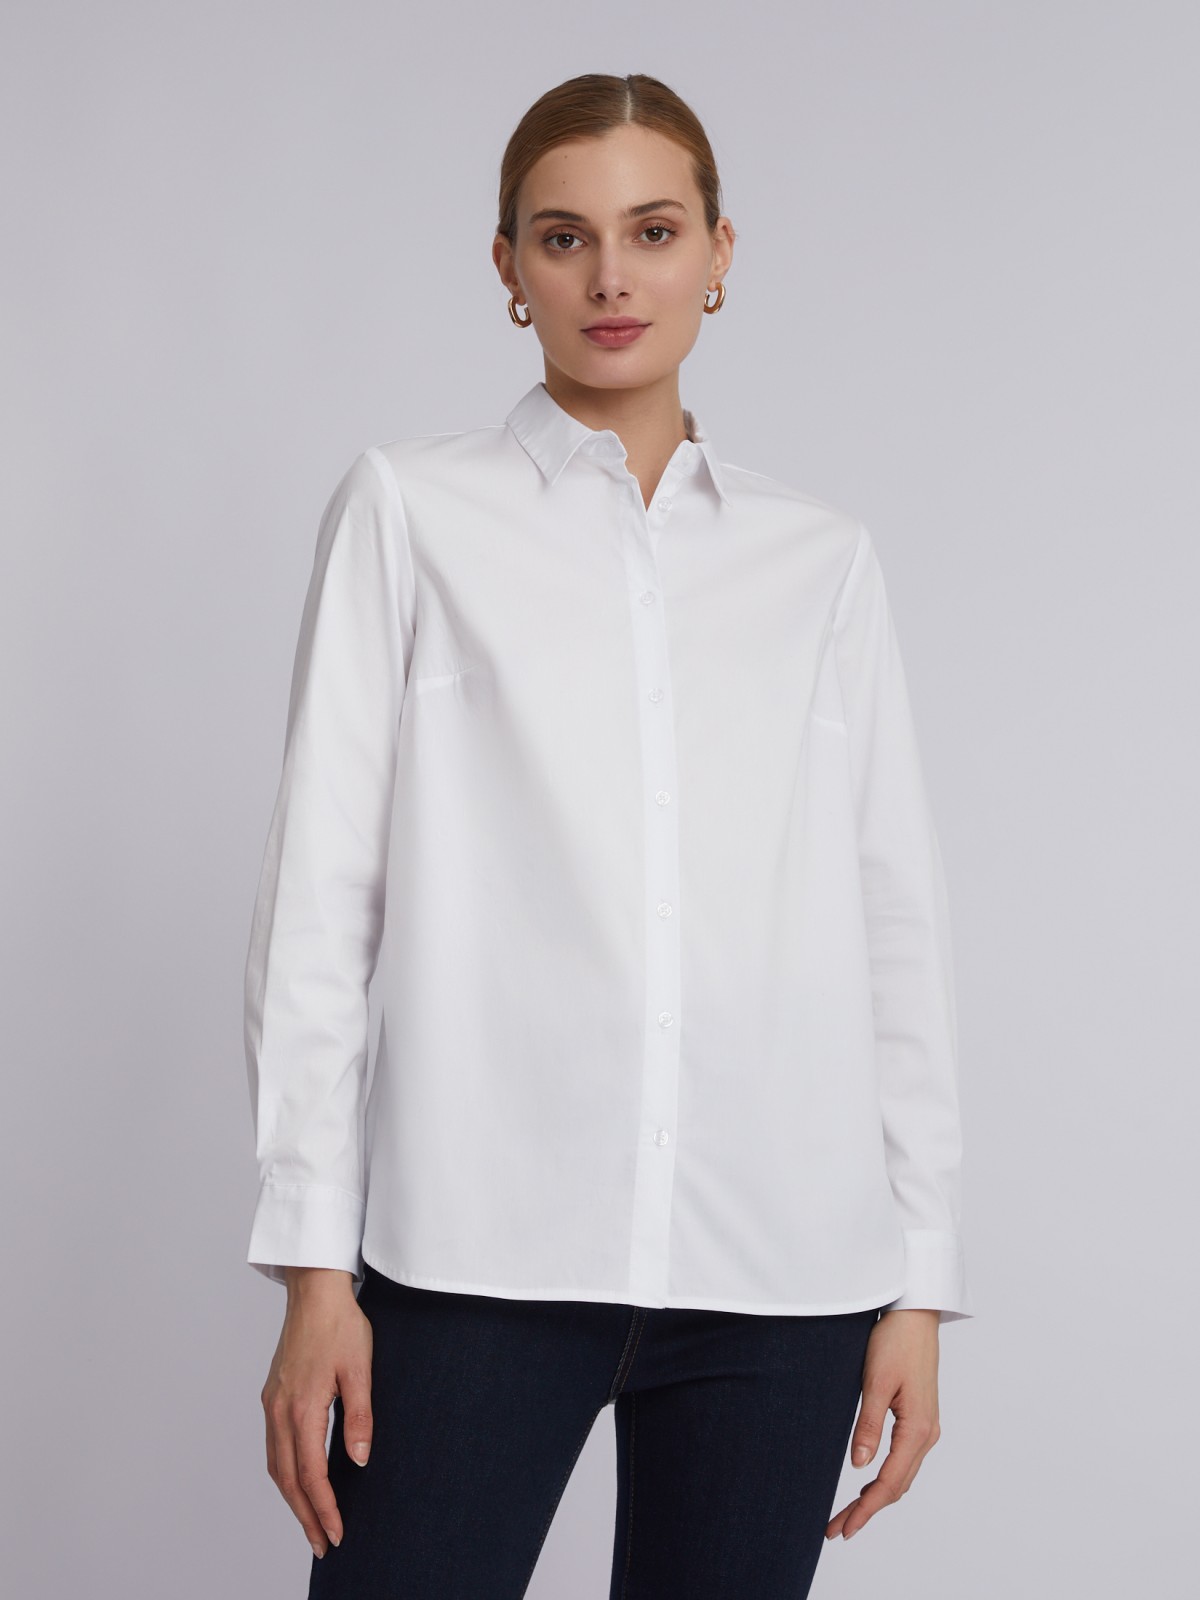 Офисная рубашка с длинным рукавом zolla 023311159152, цвет белый, размер XS - фото 5